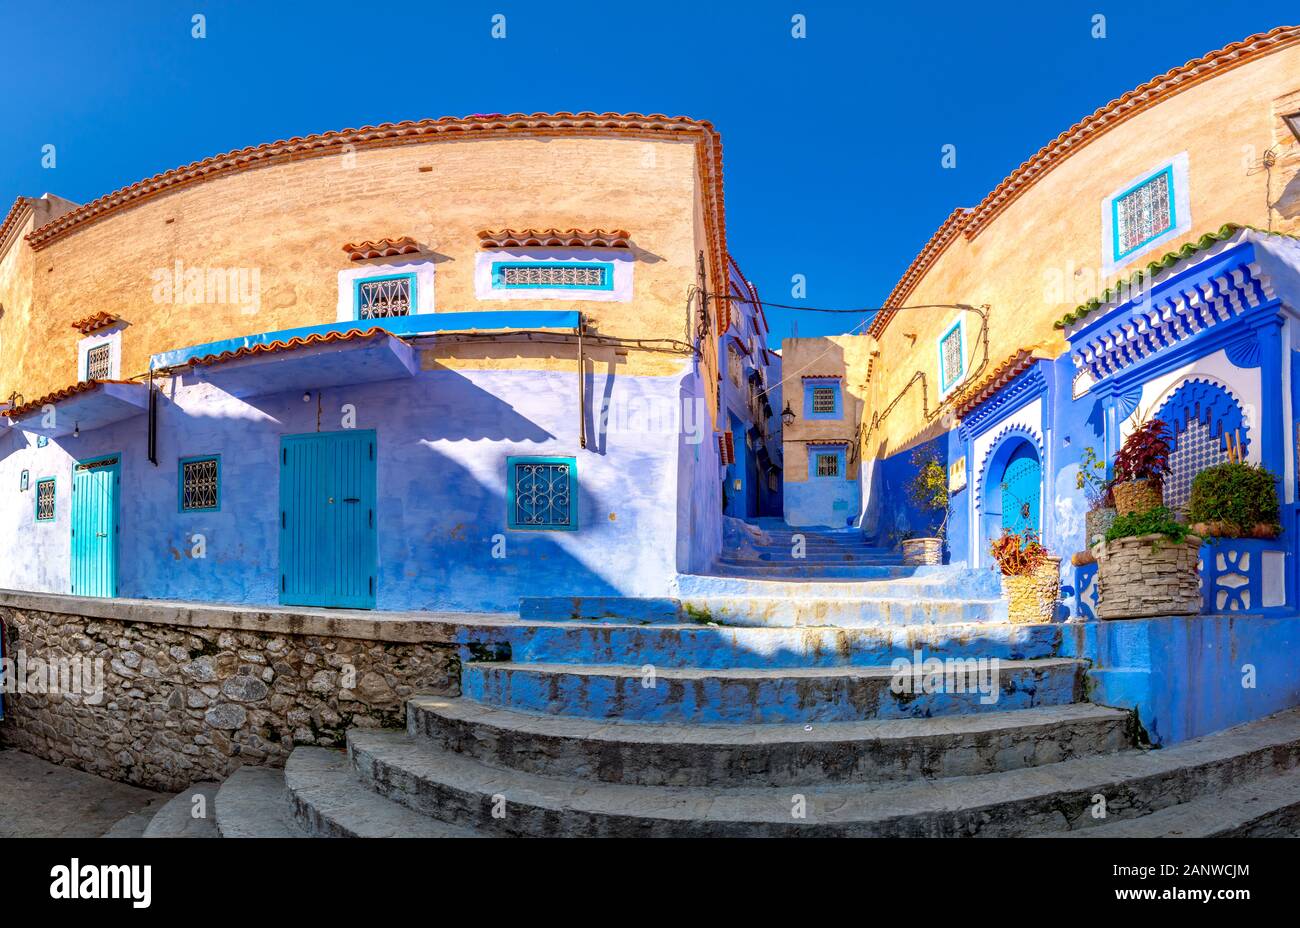 Chefchaouen, une ville aux maisons peintes en bleu et aux rues étroites, belles et bleues, Maroc, Afrique Banque D'Images